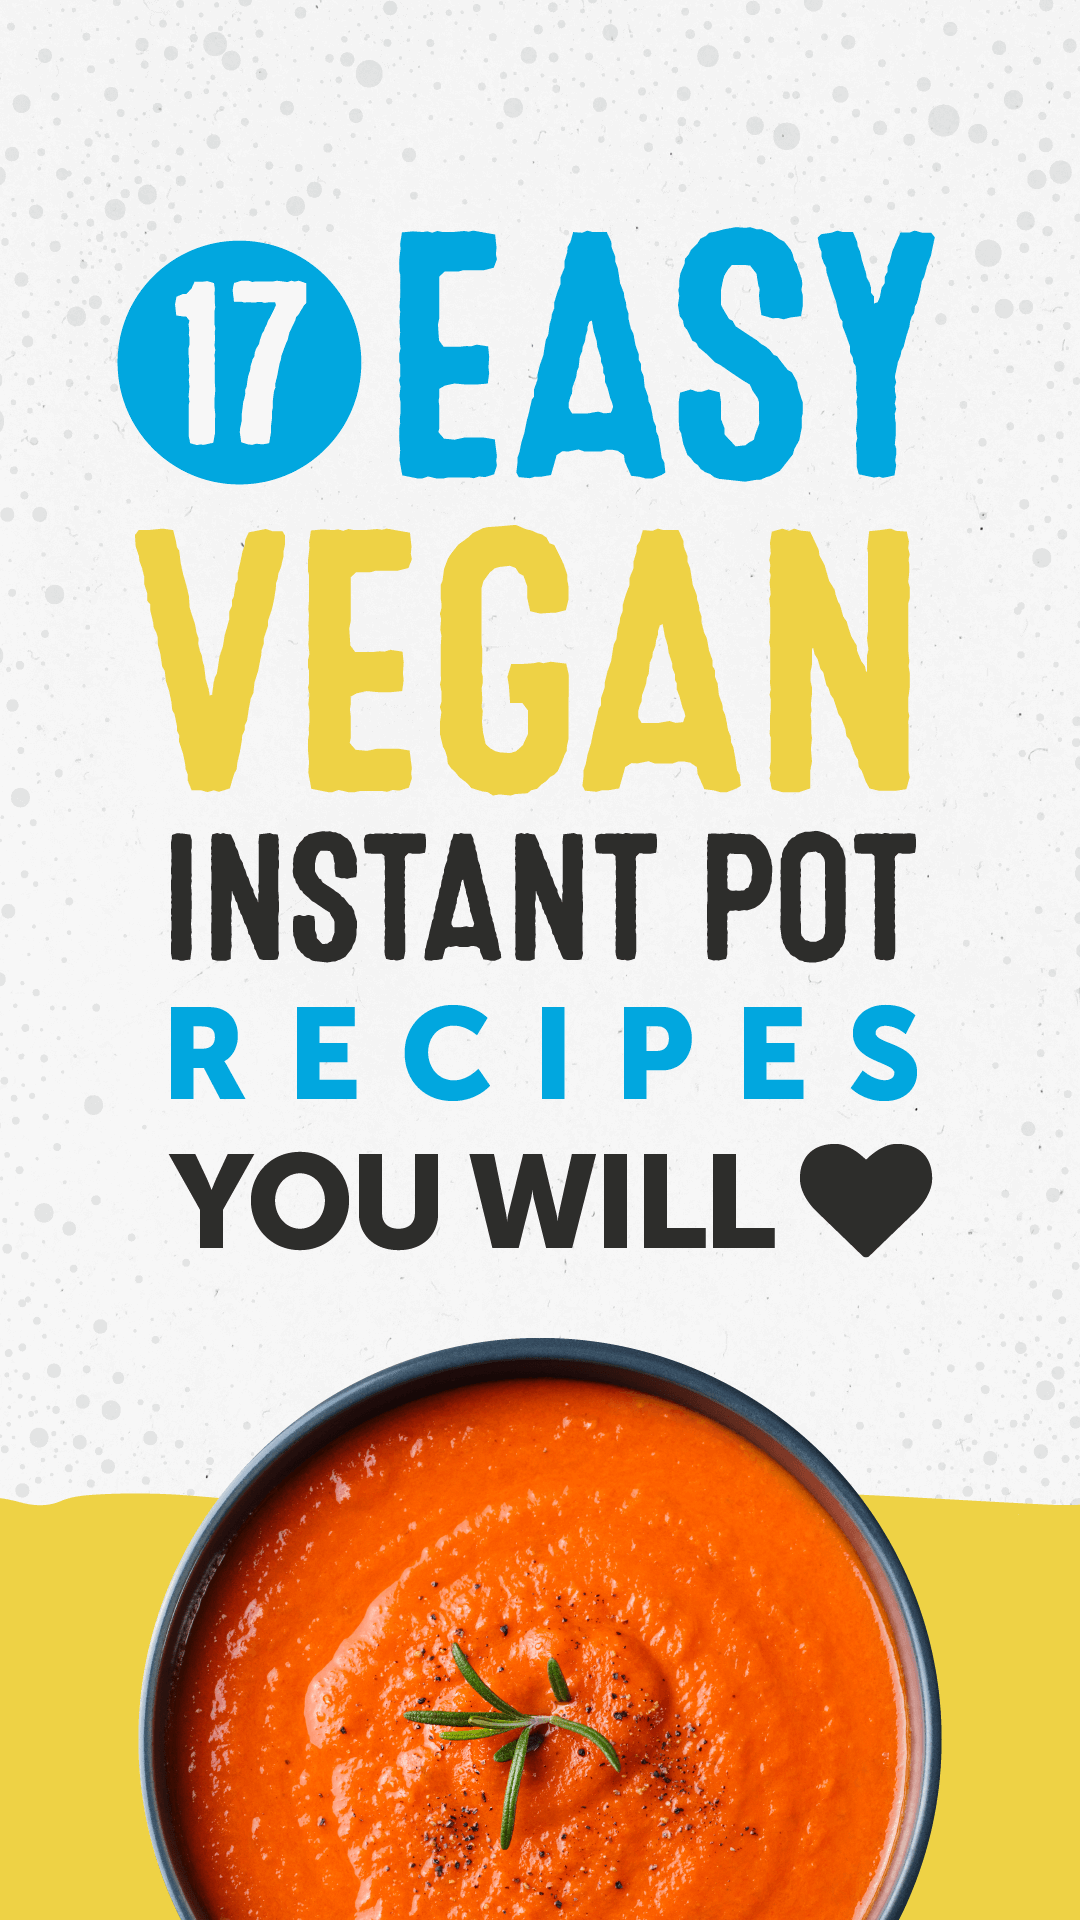 17 Easy Vegan Instant Pot Recipes You’ll Love